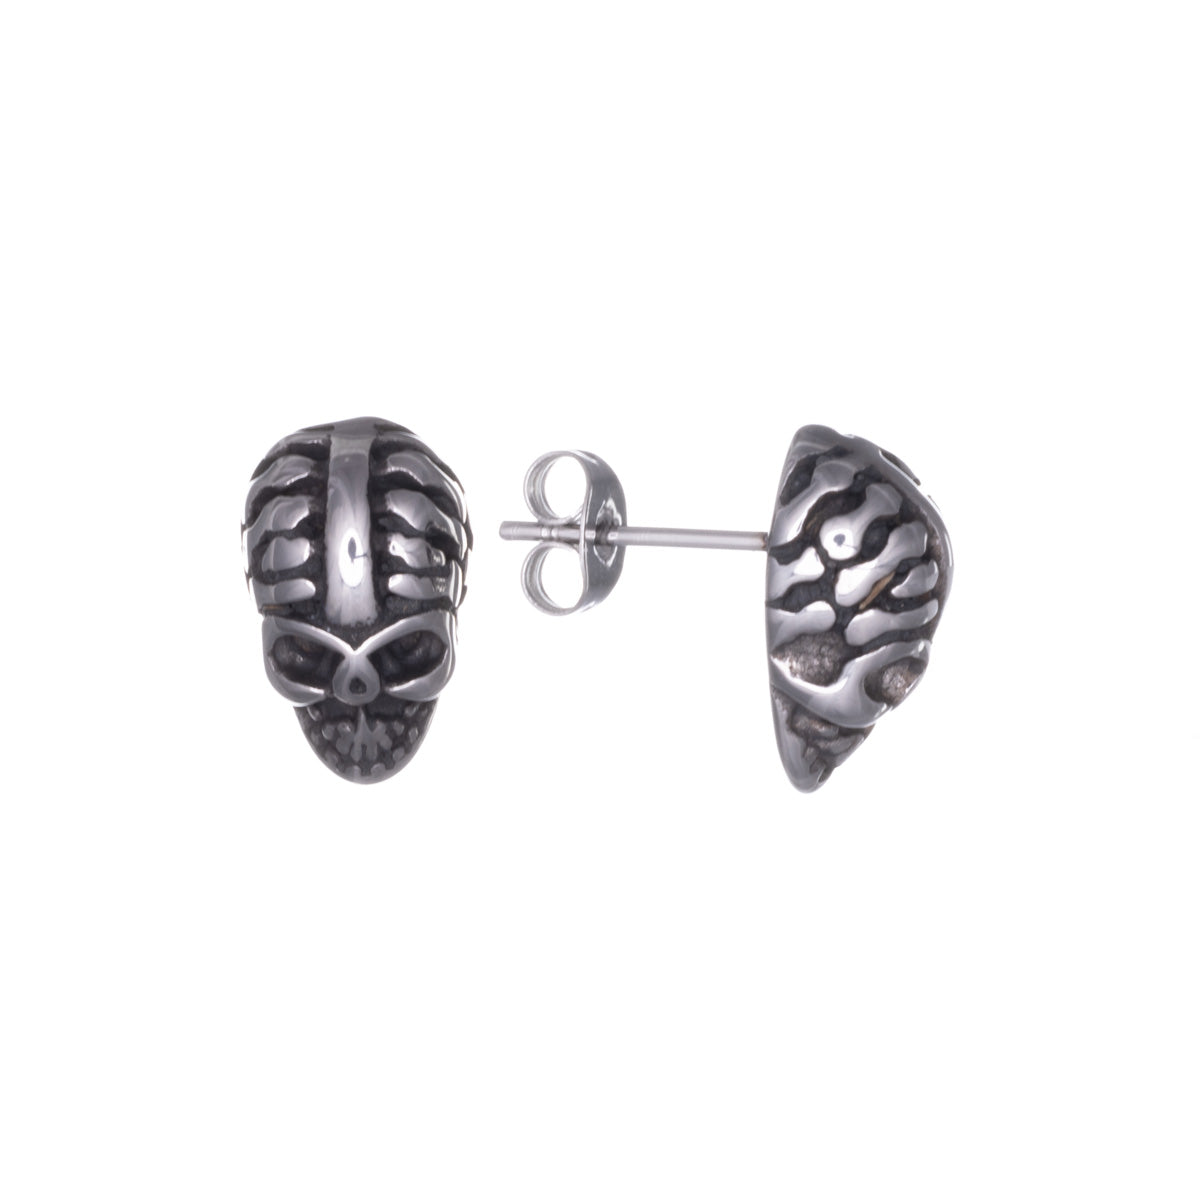 Steel skull earrings (Steel 316L)